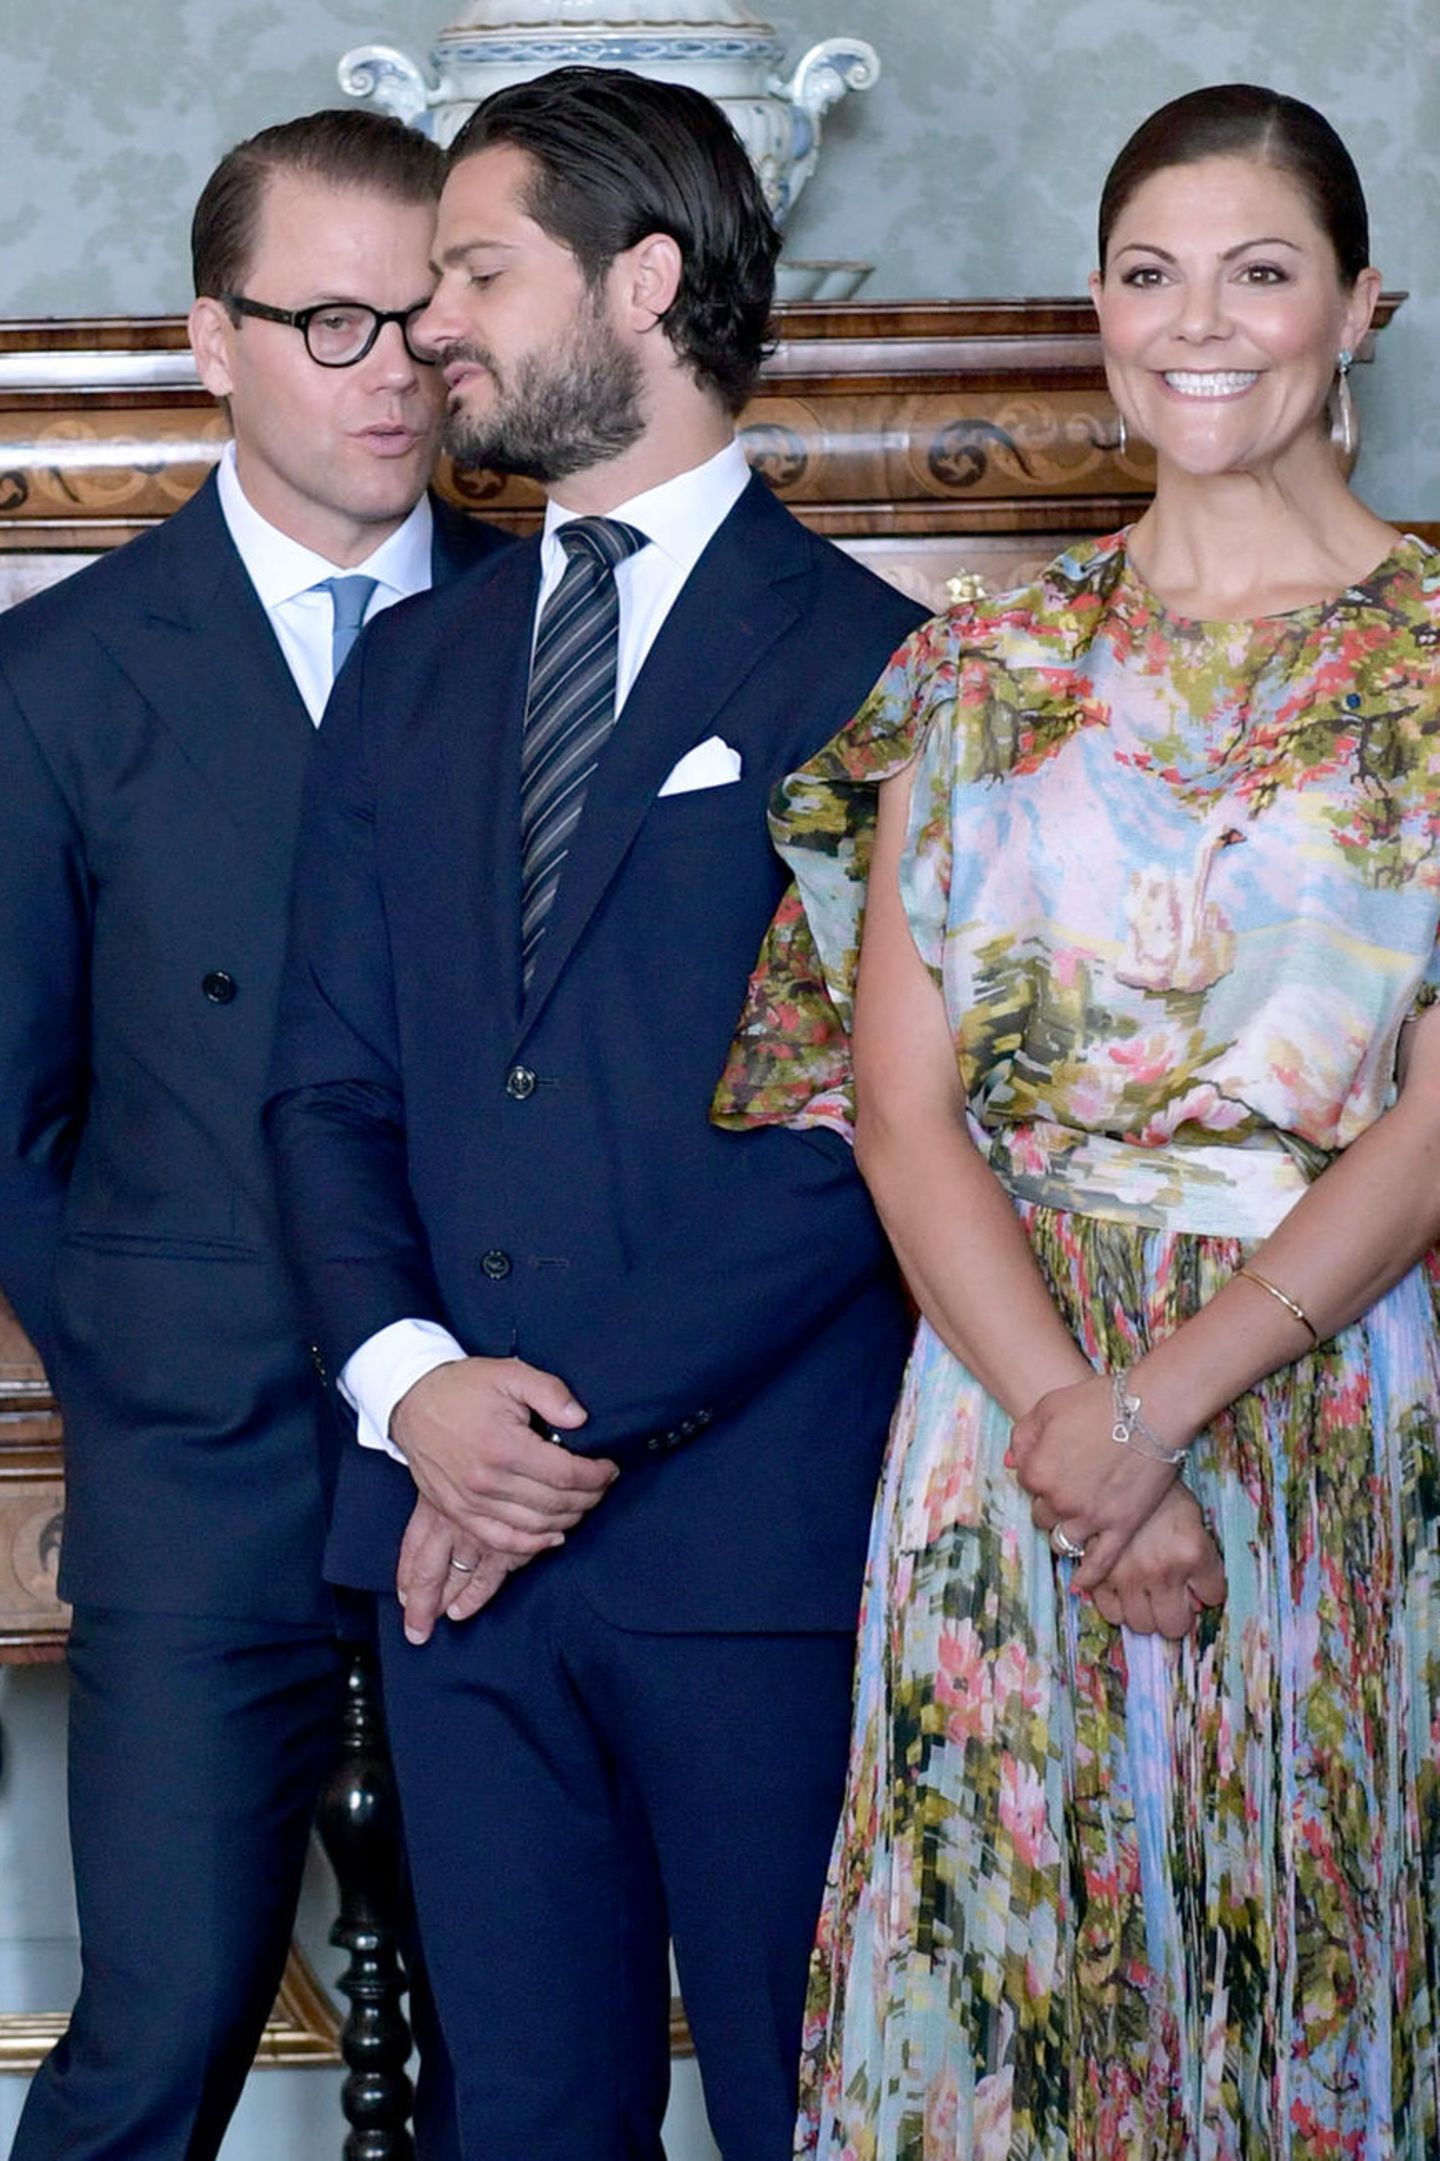 Bei dem Termin waren auch Prinz Carl Philip und Victorias Ehemann Prinz Daniel anwesend. Prinzessin Sofia fehlte hingegen. Aber das ist ja auch total verständlich, befindet sie sich doch in den letzten Zügen ihrer zweiten Schwangerschaft und muss sich momentan schonen.